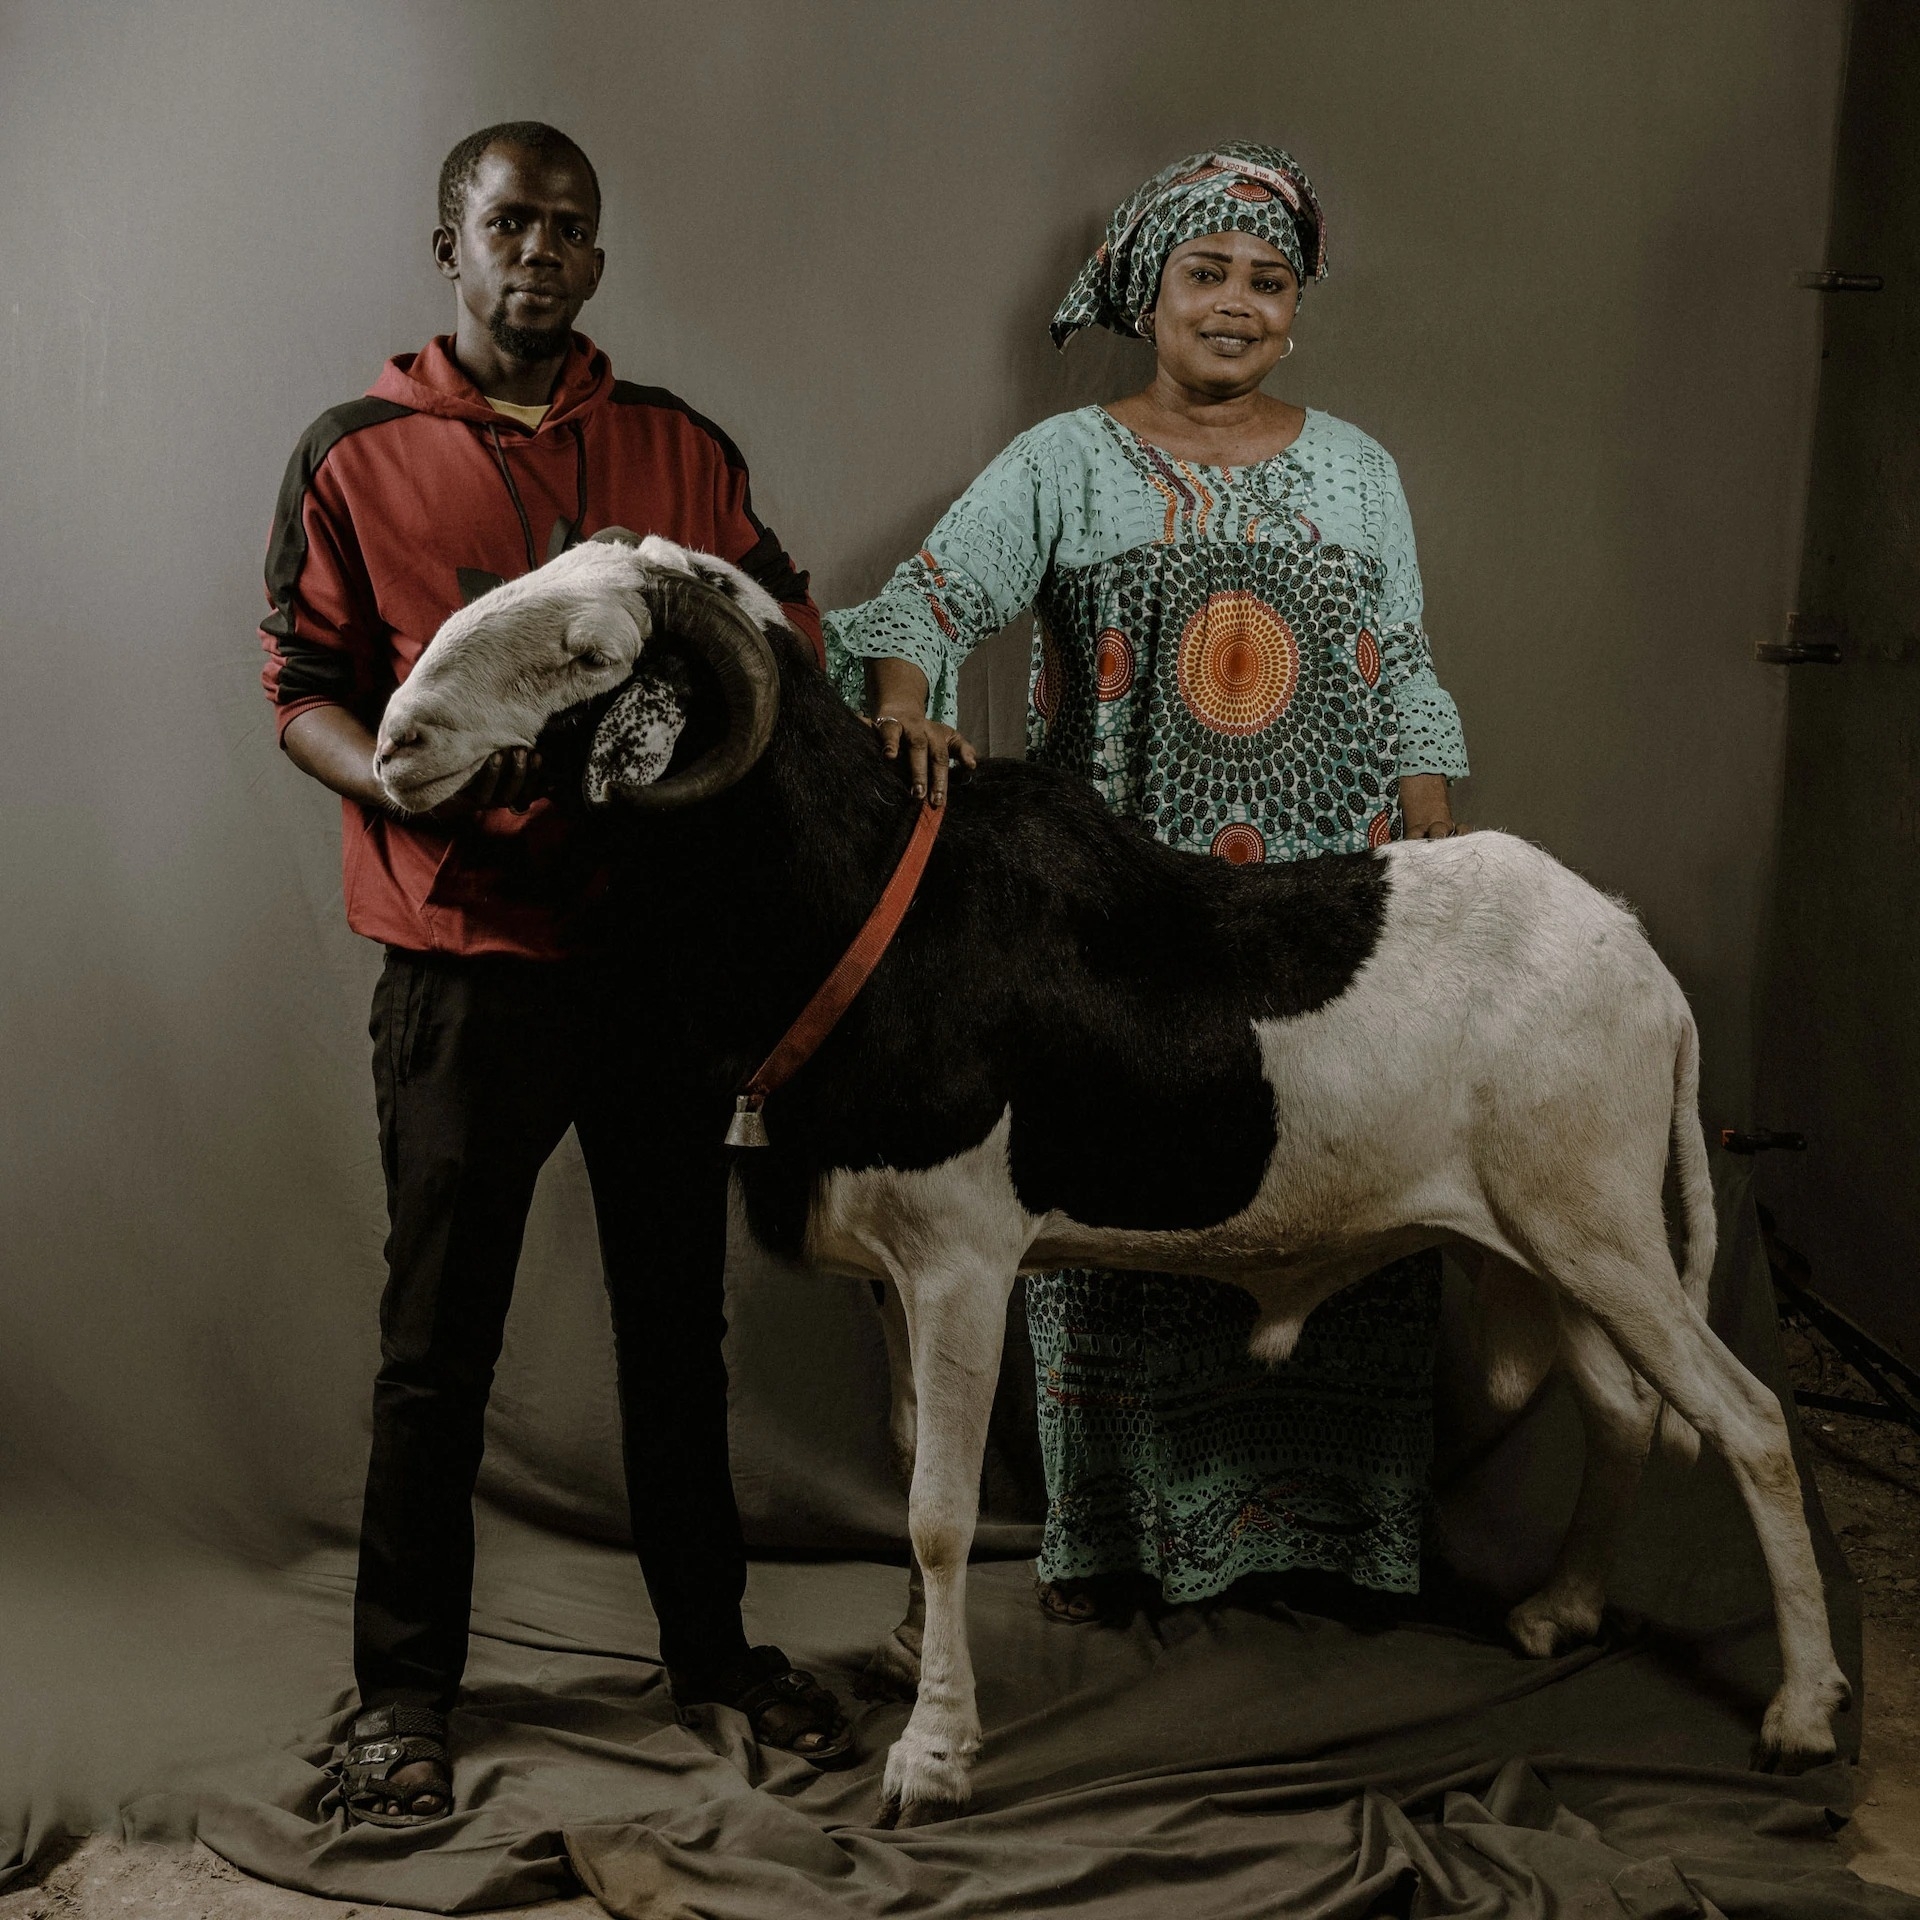 薇恩．法圖．本尼多．迪奧普（Wane Fatou Binetou Diop）夫人和兄弟穆斯塔法．迪奧普（Moustapha Diop）、還有他們的公羊一起拍照。牠是小馬帕提（Mapate Junior），今年兩歲半。